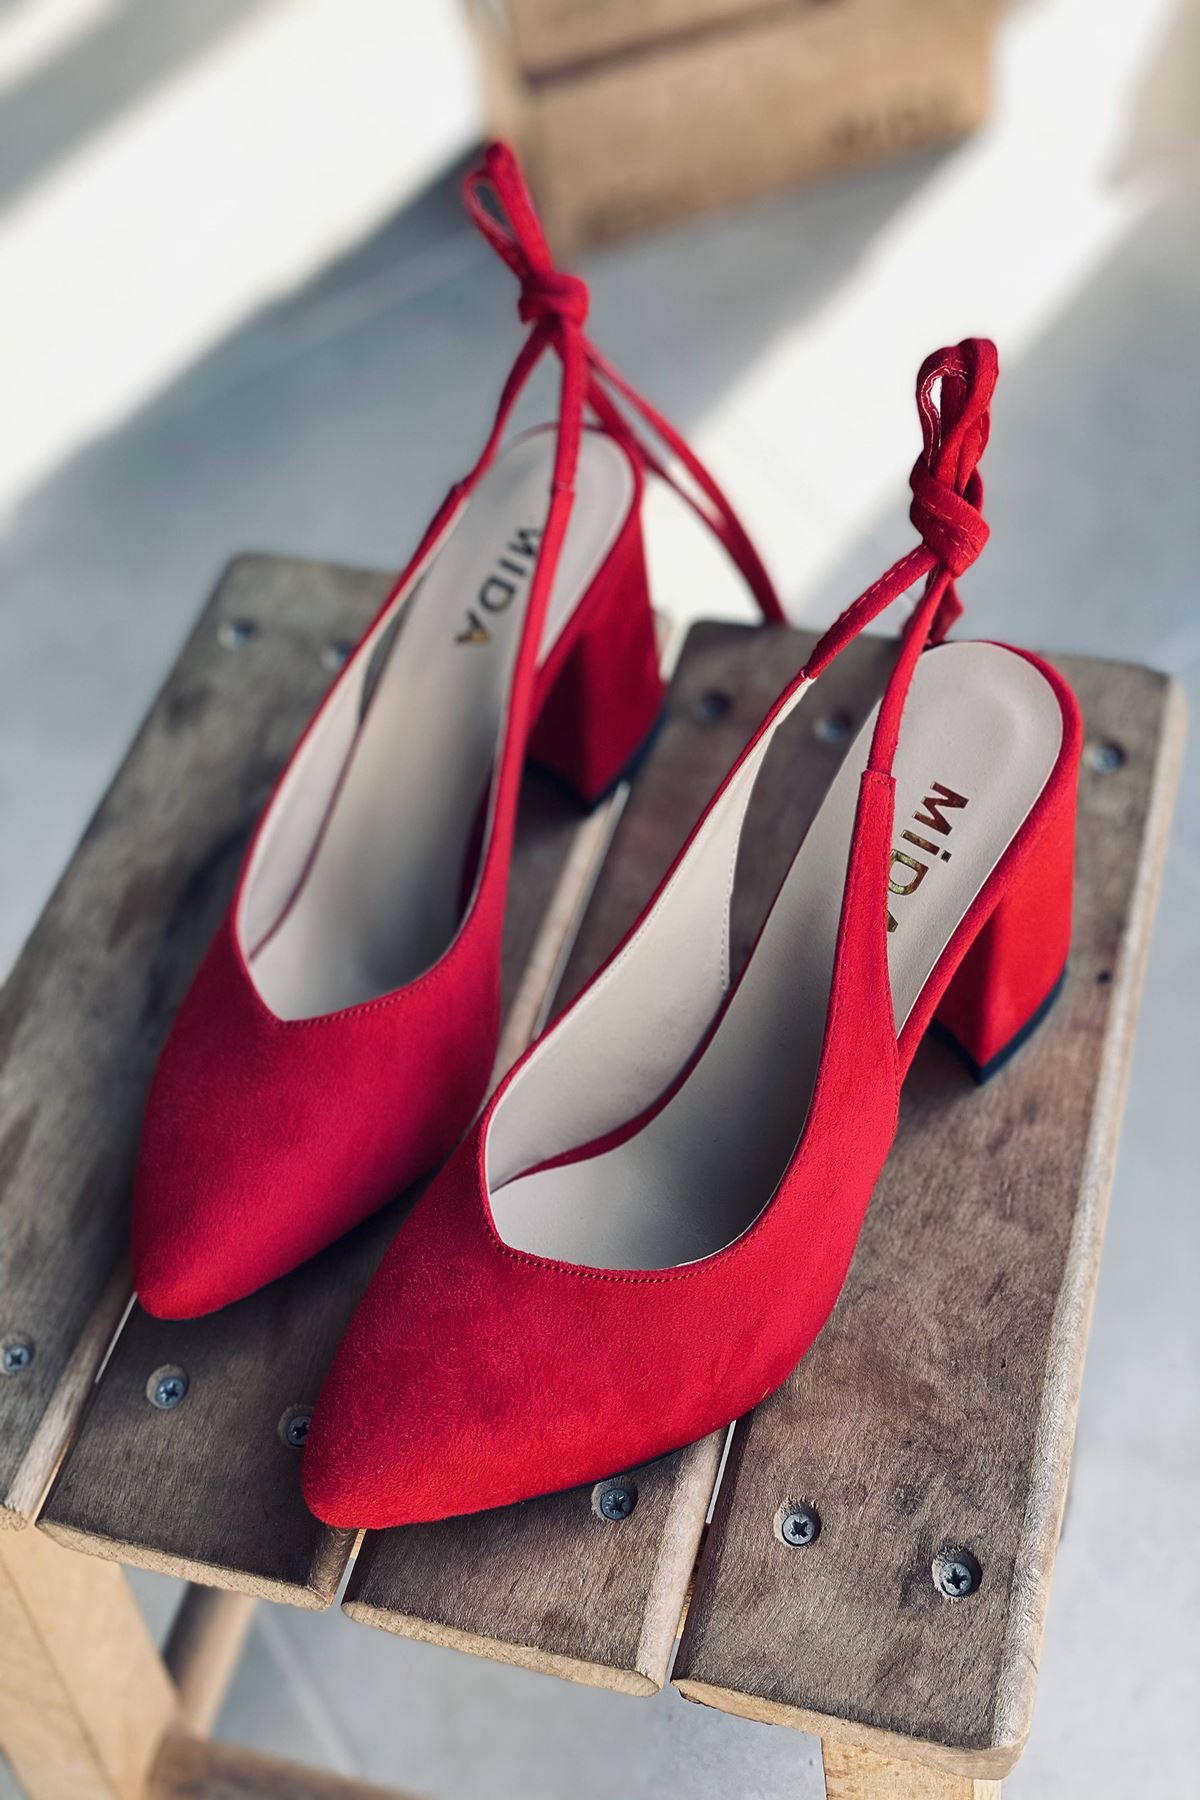 Mida Shoes Y114 Kırmızı Süet Topuklu Ayakkabı